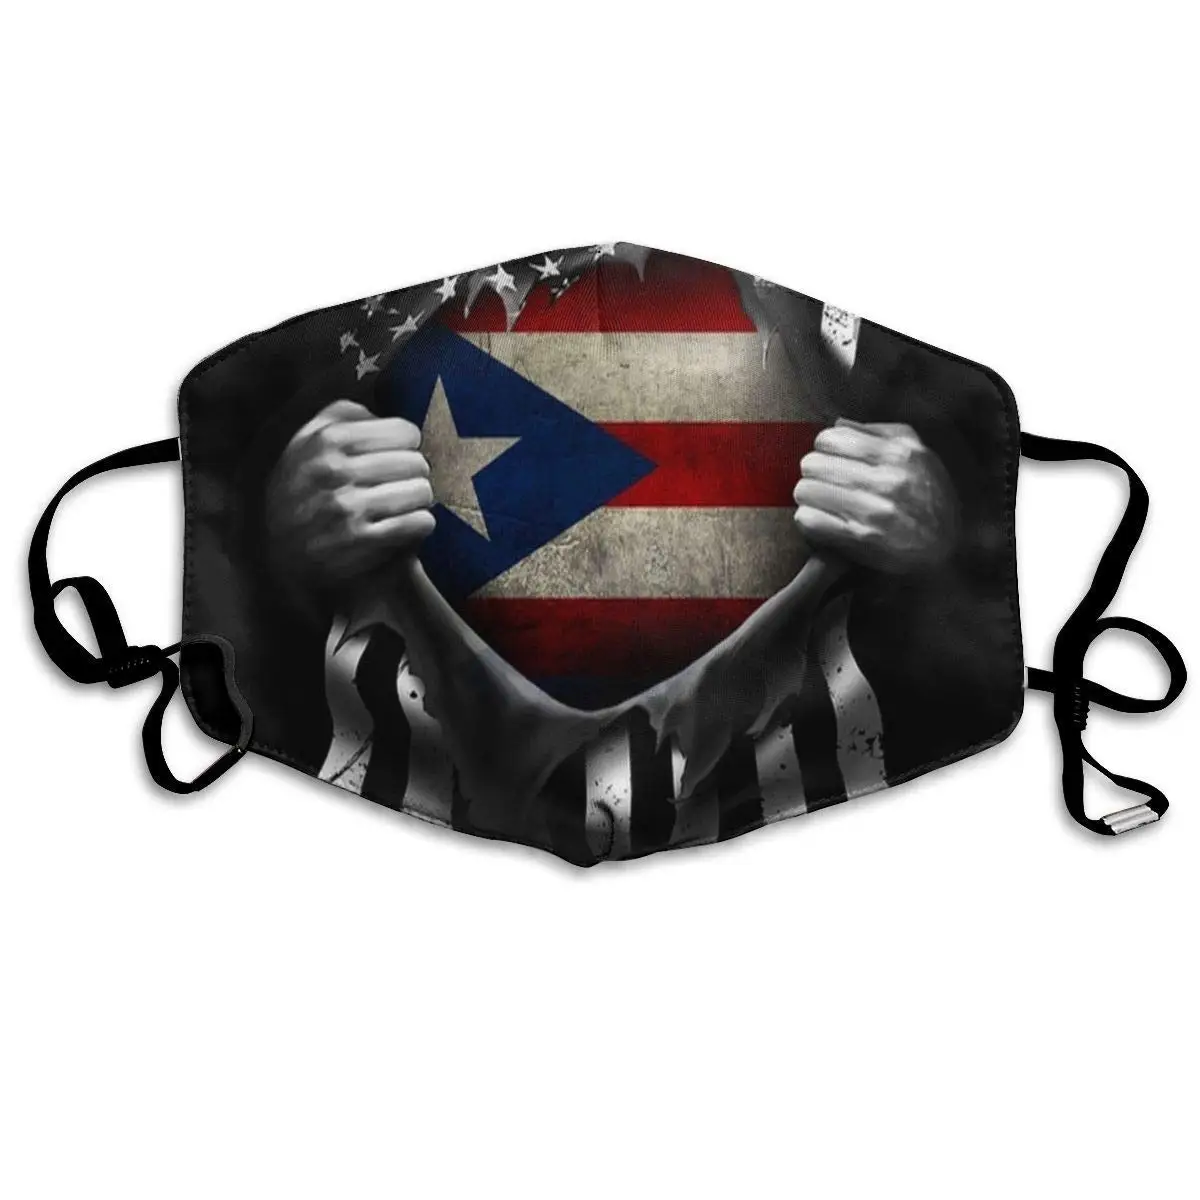 

Маска для лица многоразовая моющаяся для мужчин и женщин, с эластичной заушной петлей, Пылезащитная, с флагом Пуэрто-Рико